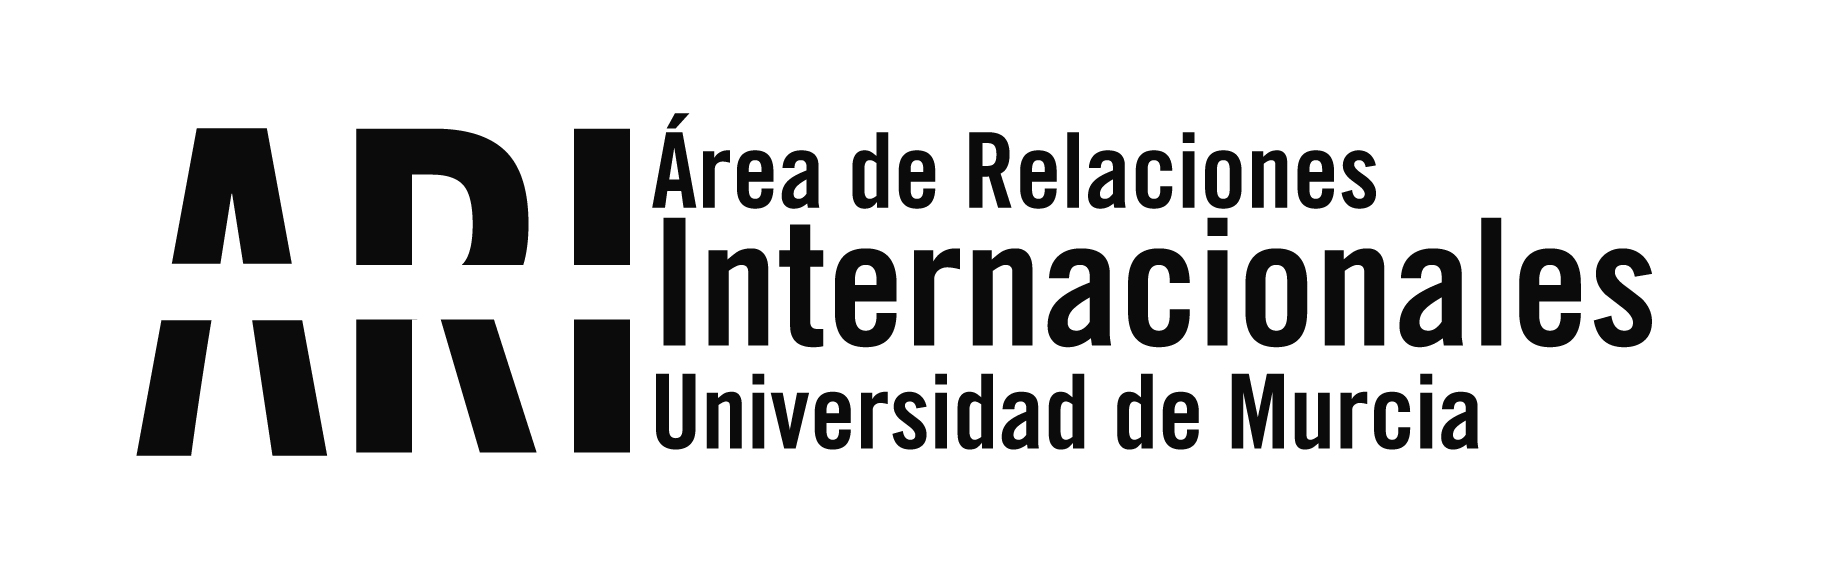 Asistencia al IV Encuentro de APUNE (Asociación de Programas Universitarios Estadounidenses en España - Área de Relaciones Internacionales